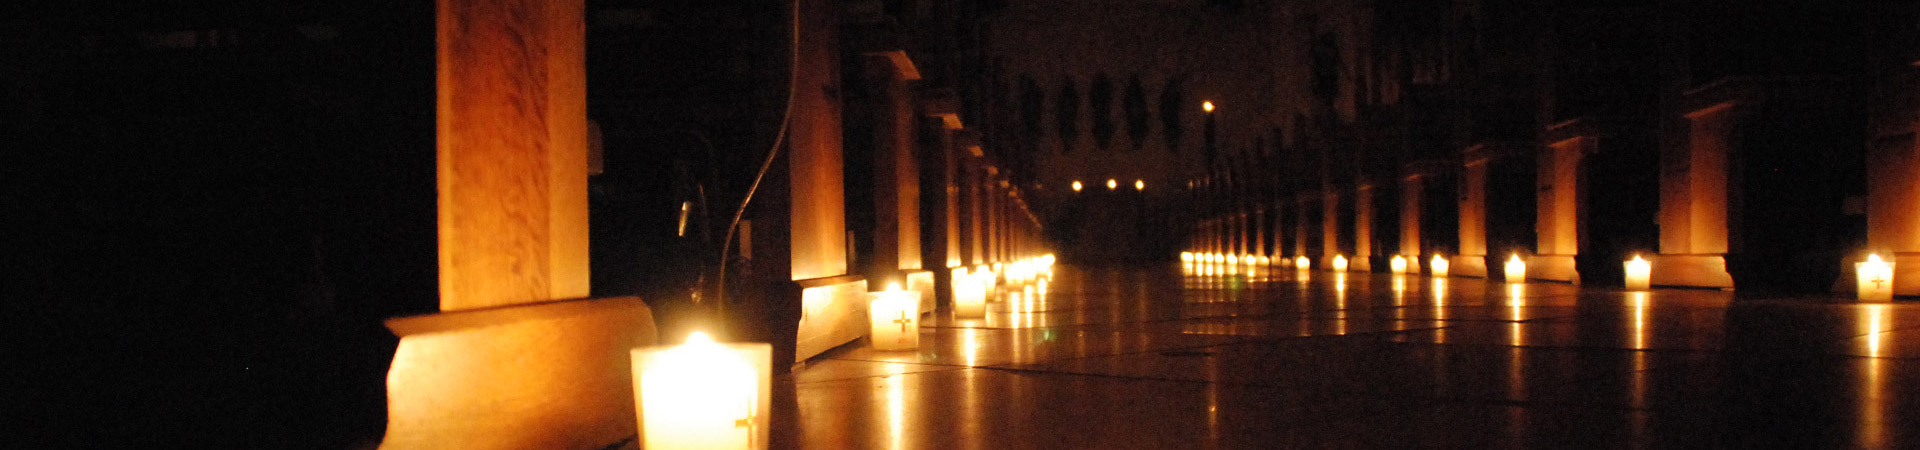 Mittelgang der Kirche mit Kerzen erleichtet